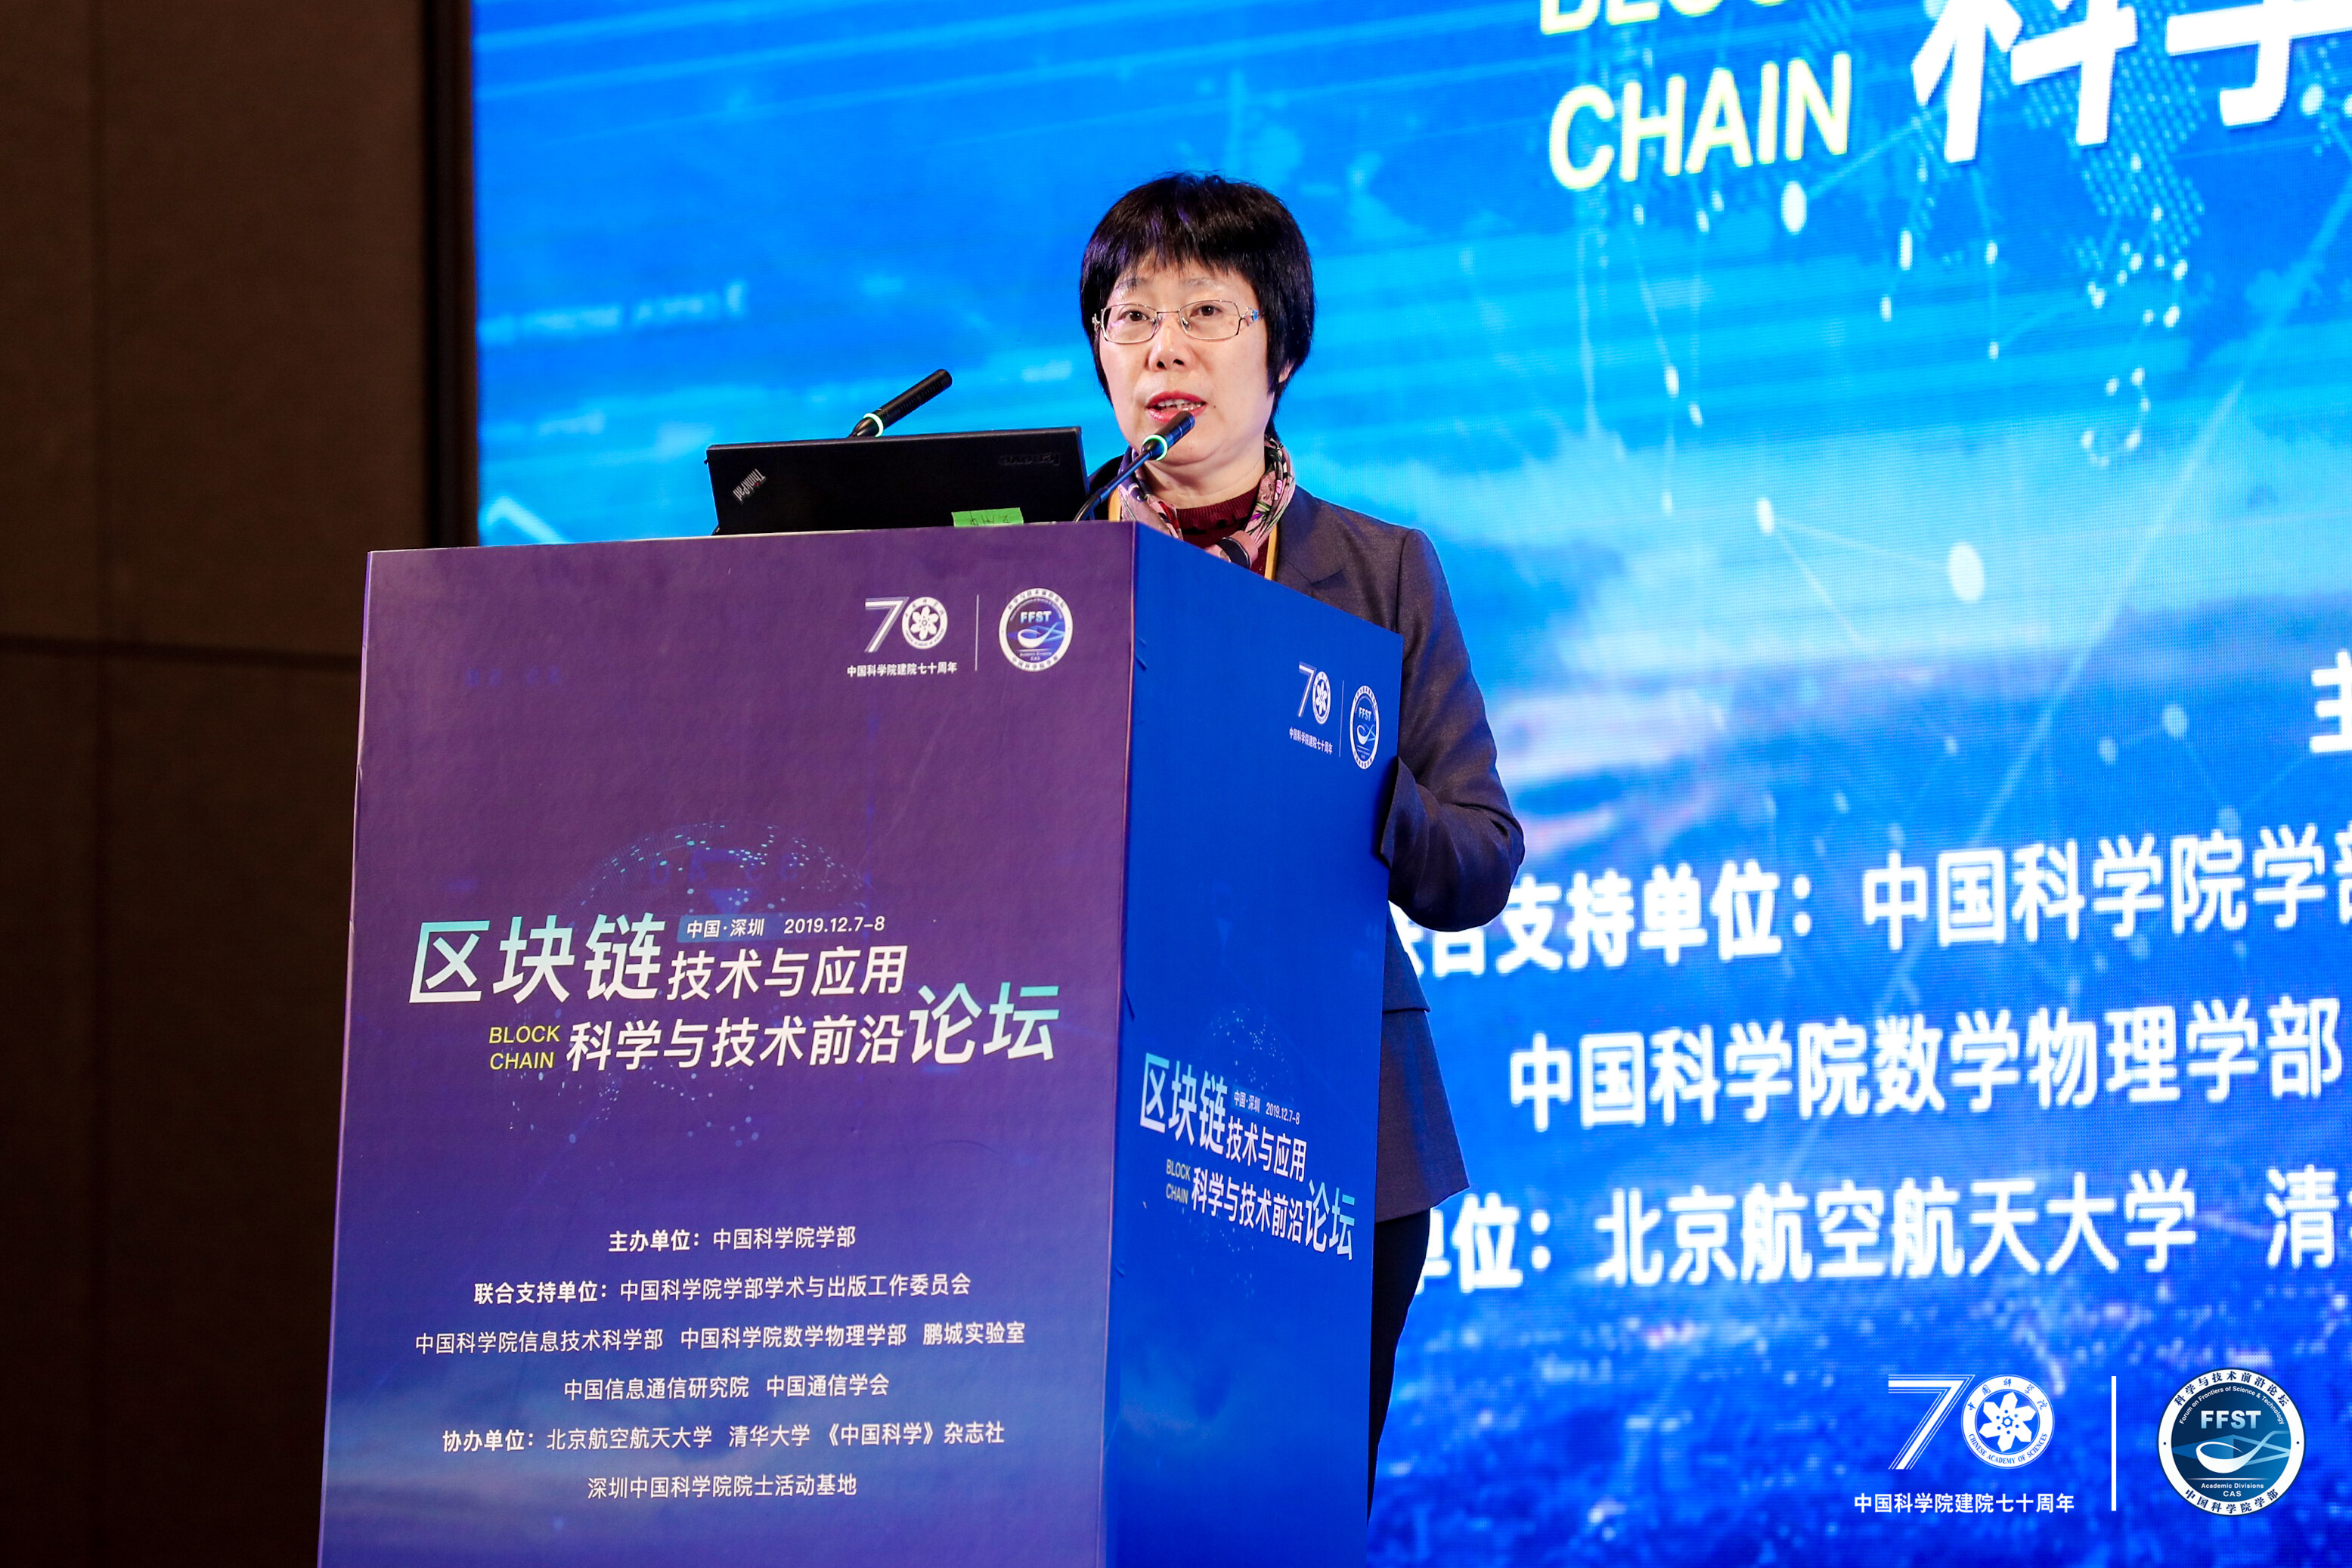 中科院院士王小云：中国急需抢先制订区块链、国产操作系统等密码协议标准与技术规范